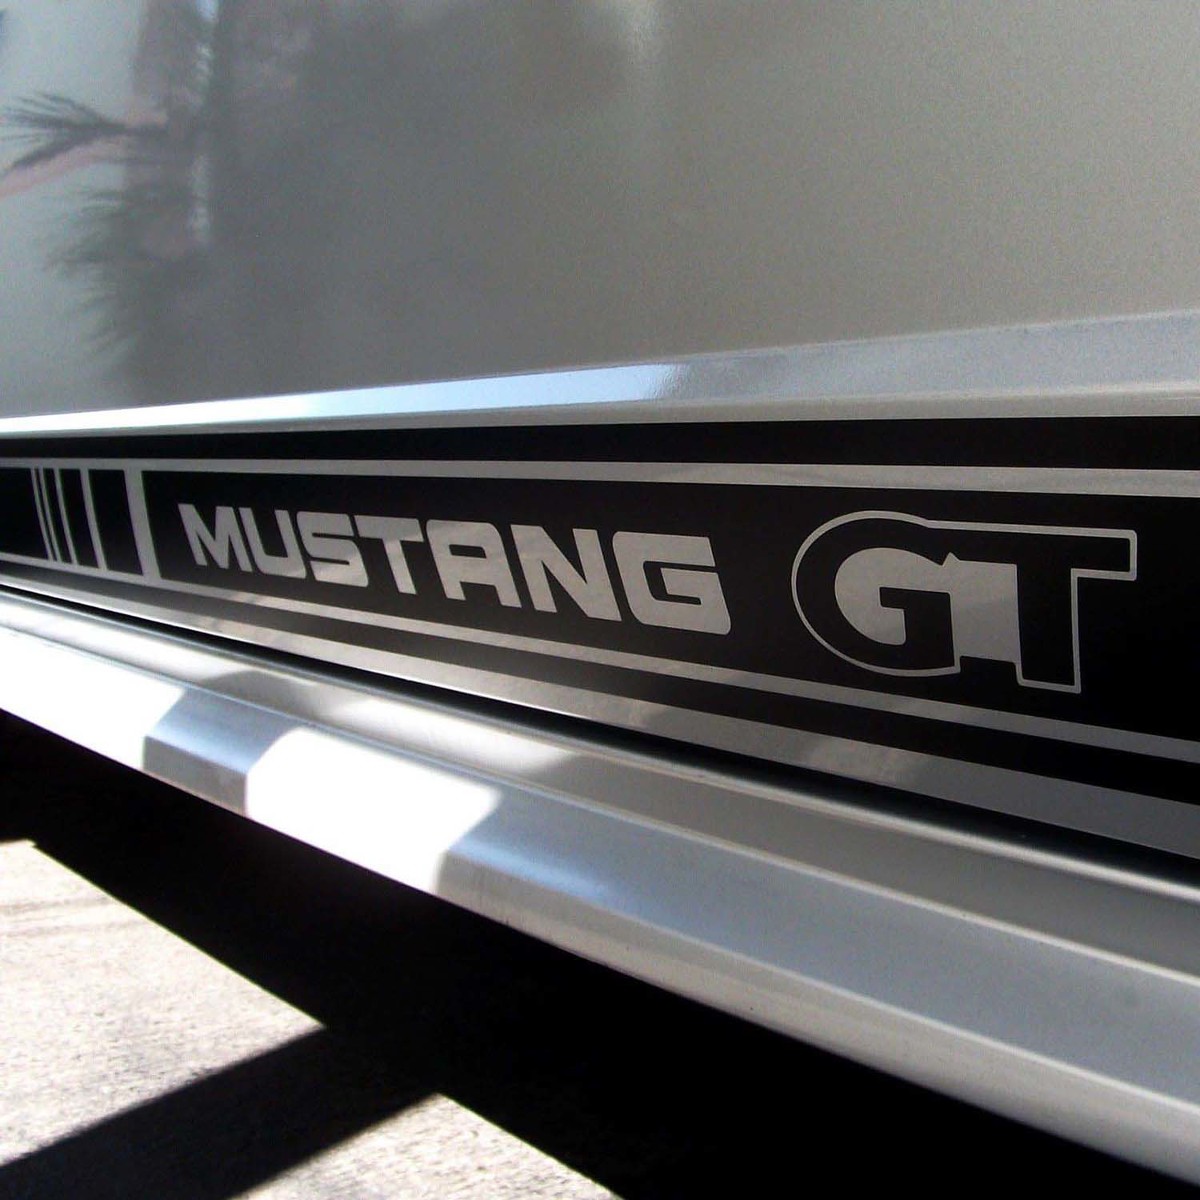 2er-Set: Rocker Stripes Aufkleber mit Mustang GT Letters2000-2020 Modellen